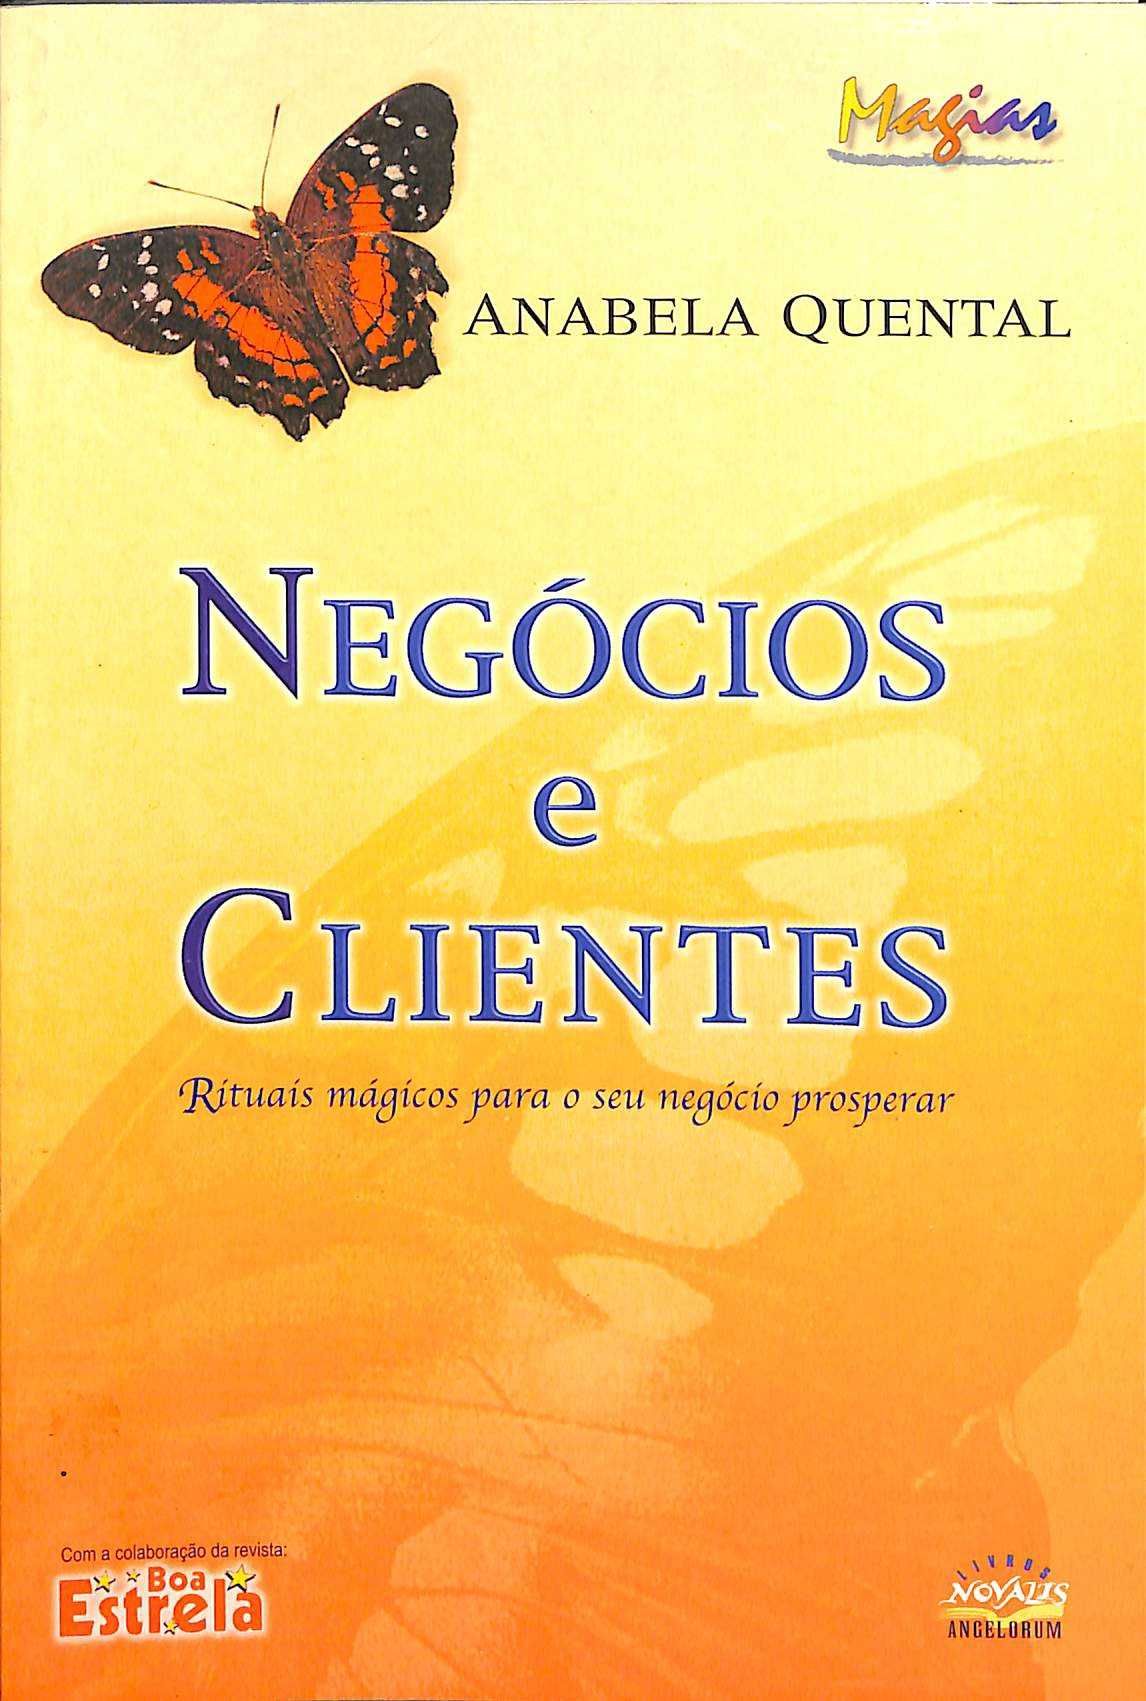 "Negócios e Clientes" de Anabela Quental [Novo]